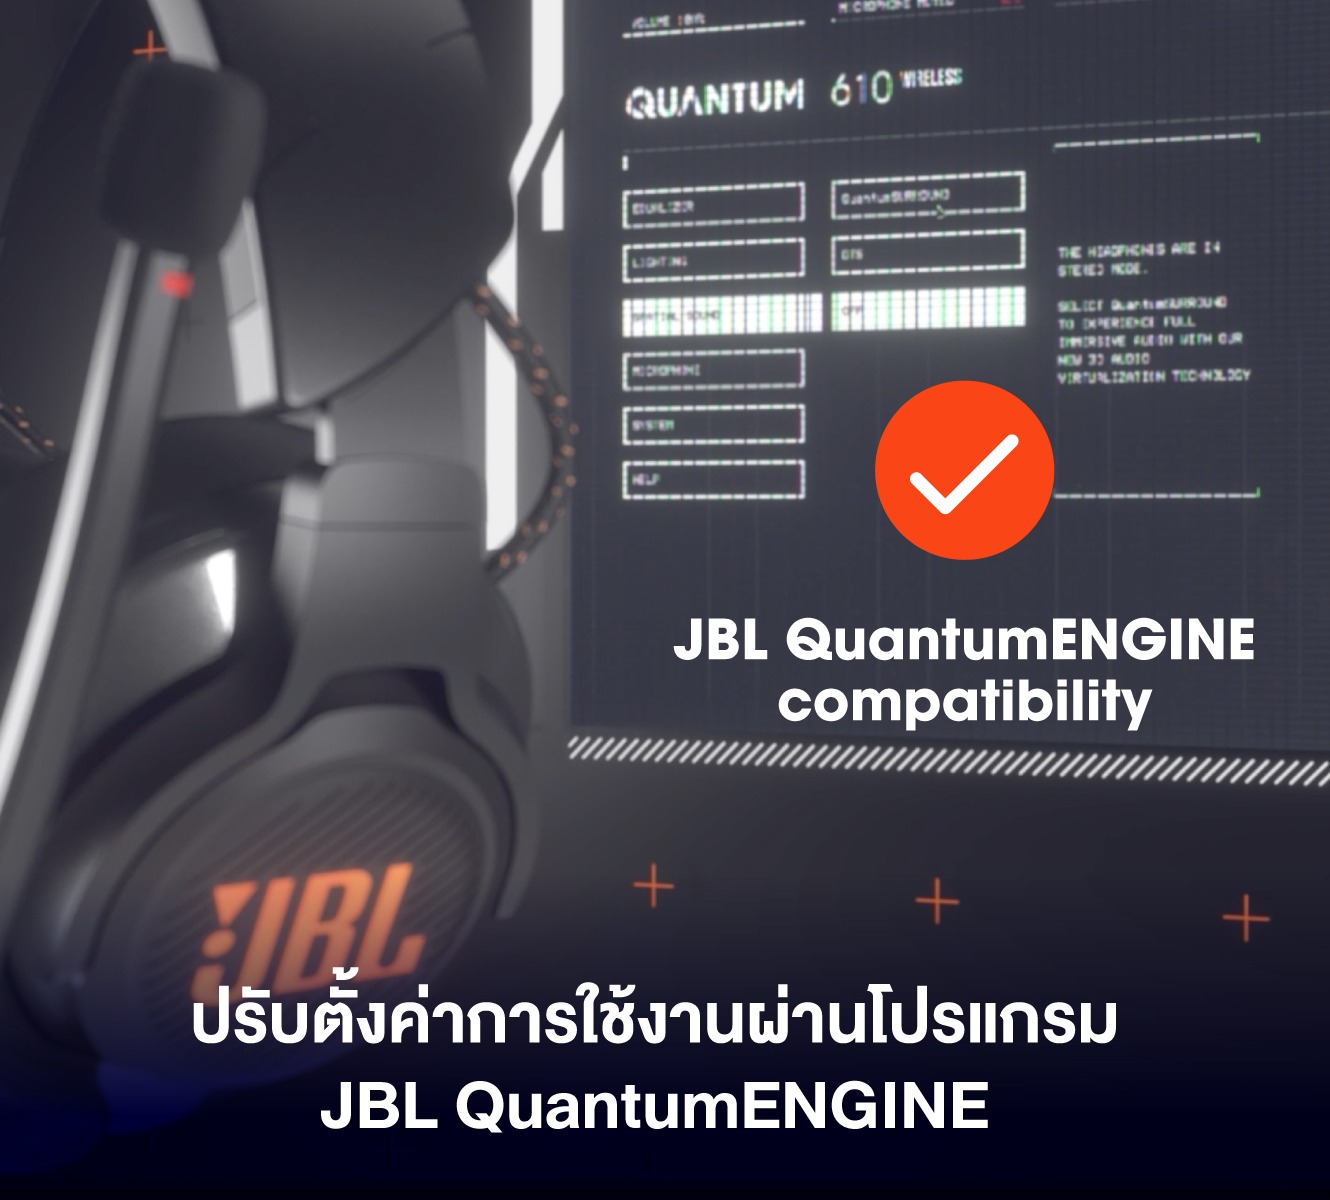 JBL-QUANATUM 610 QuantumENGINE